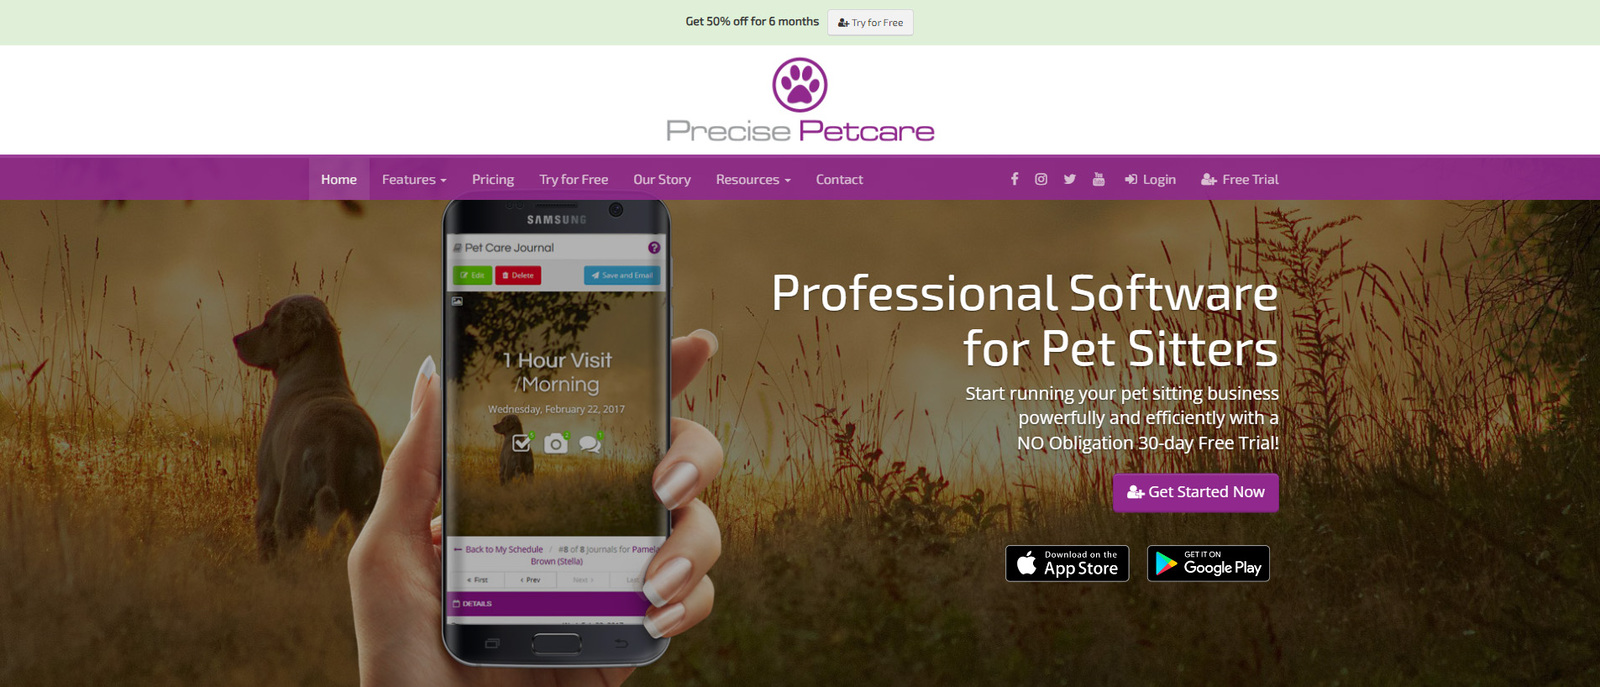 รูปภาพของ Precise Petcare หนึ่งในตัวเลือกซอฟต์แวร์ดูแลสัตว์เลี้ยงที่ดีที่สุดสำหรับผู้พาสัตว์เลี้ยงเดินเล่น